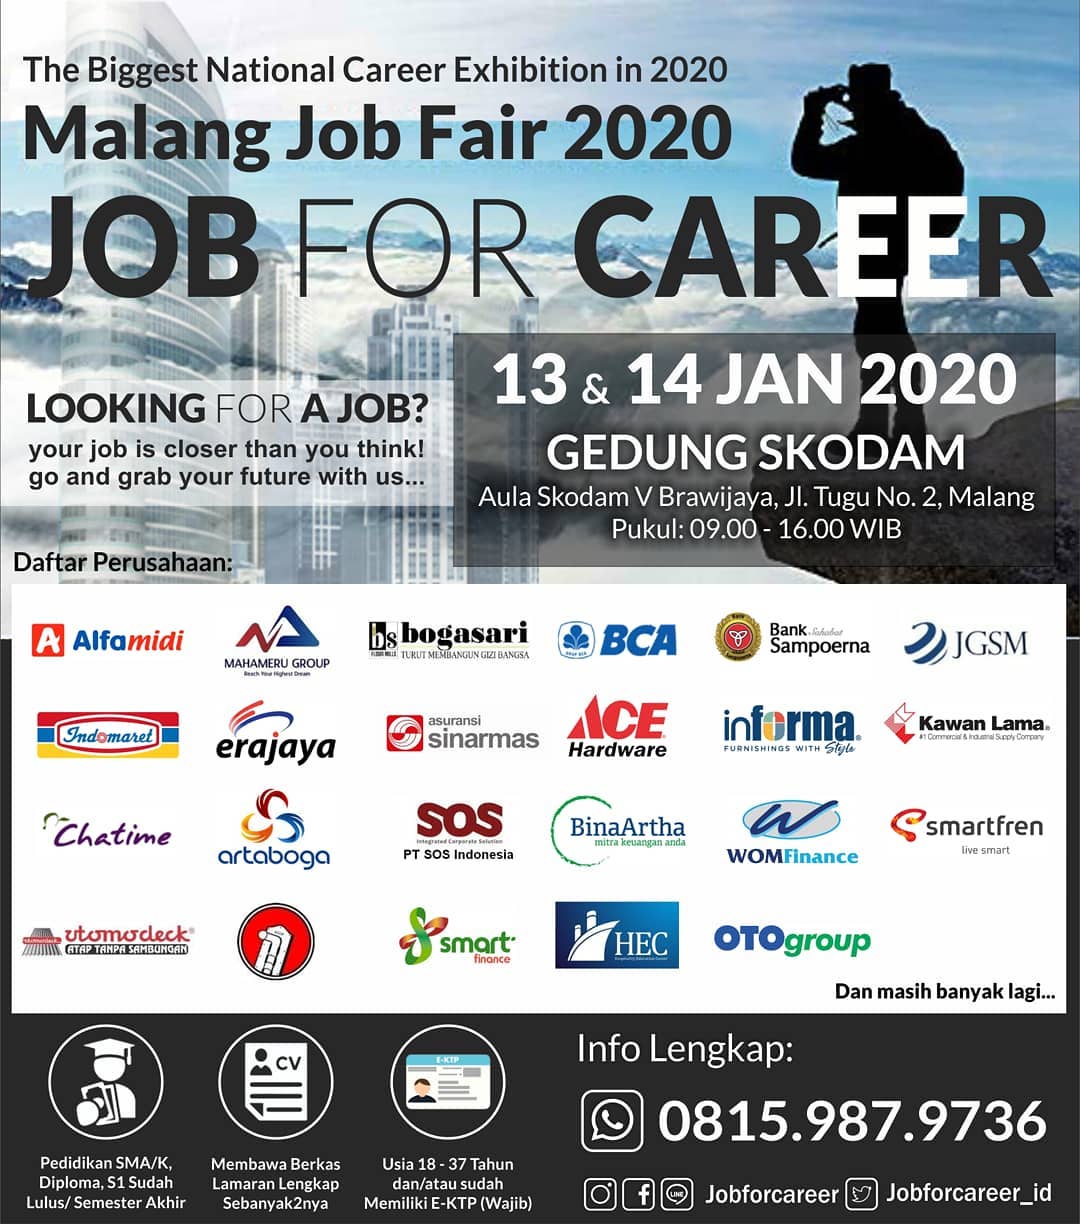 Malang Job Fair â€œJOB FOR CAREERâ€